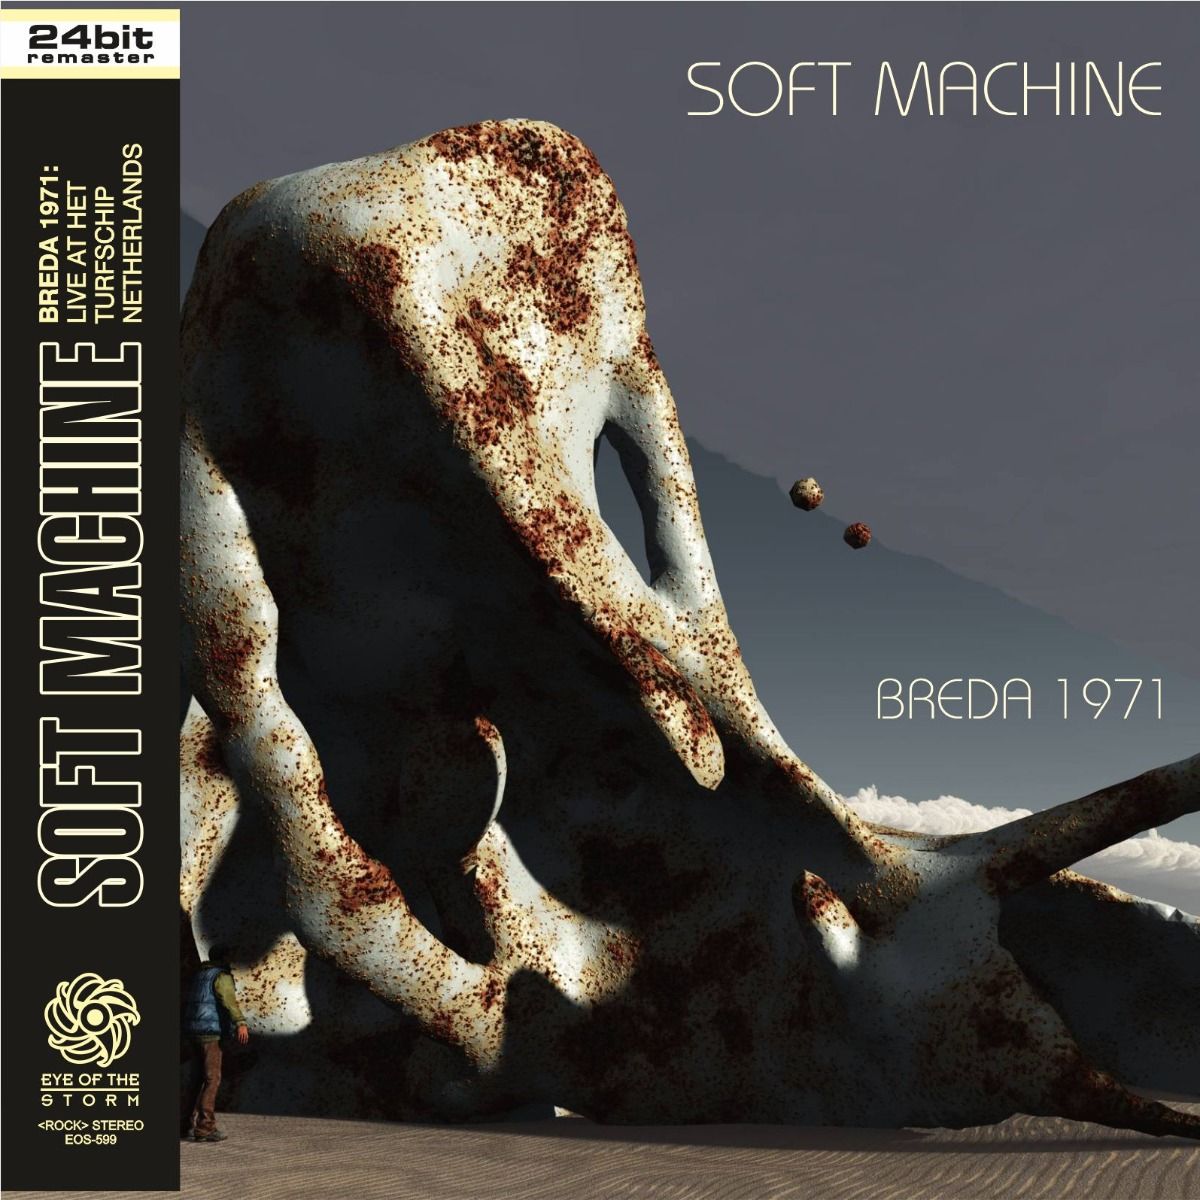 SOFT MACHINE Live in Breda 1971